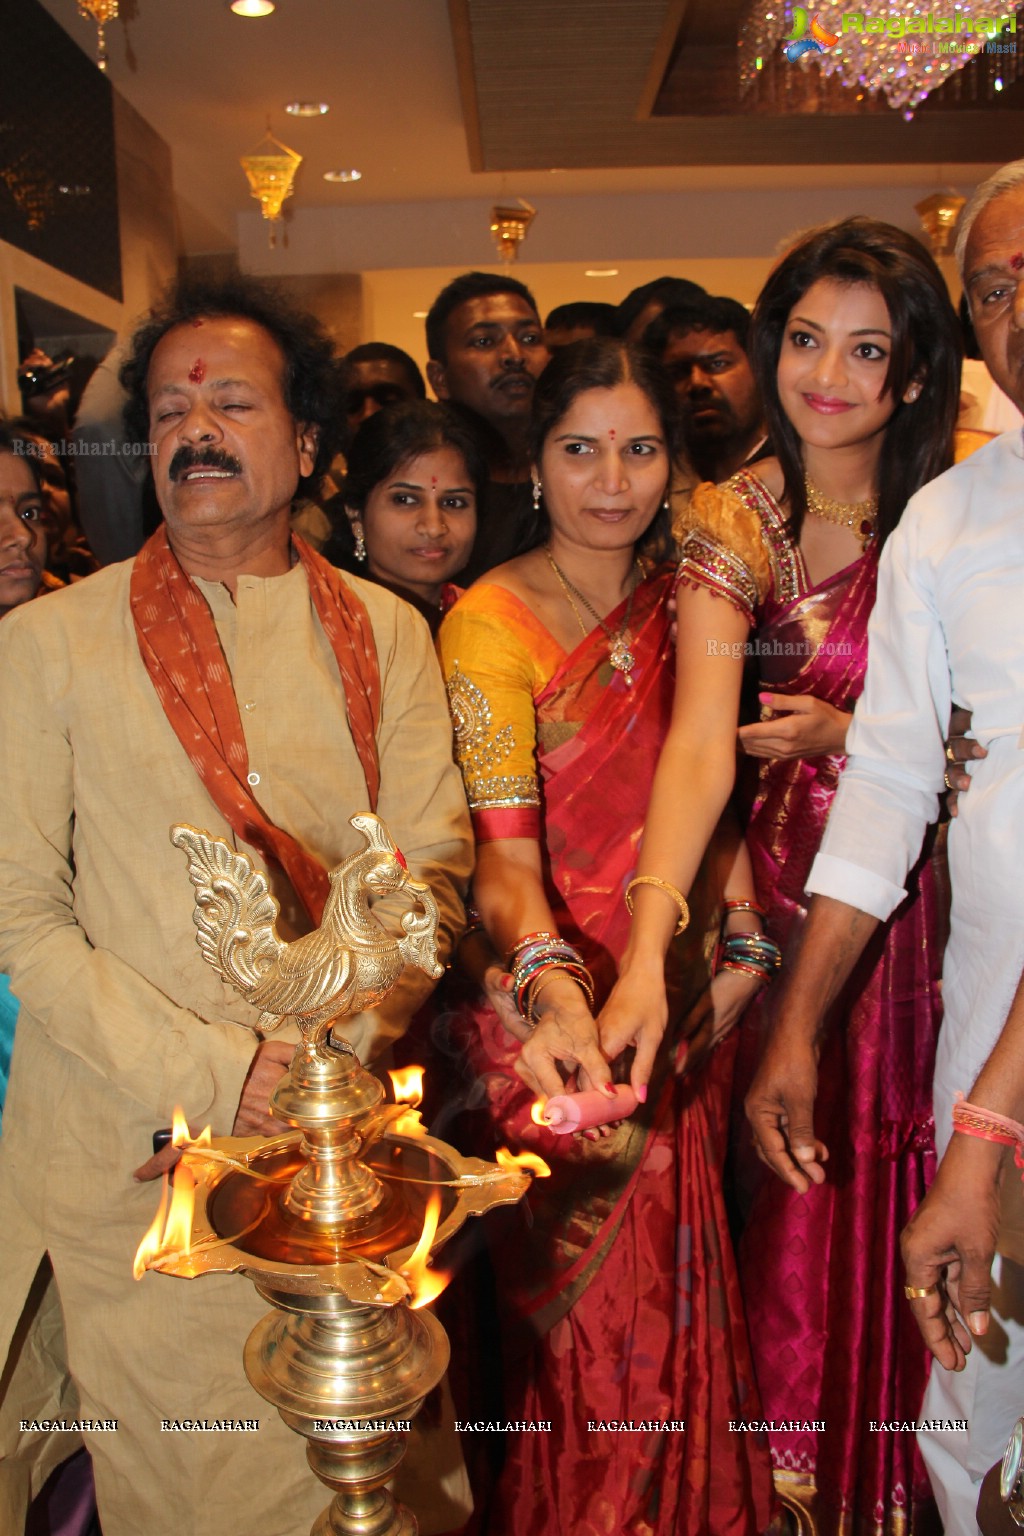 Kajal inaugurates Chennai Shopping Mall at AS Rao Nagar, Hyderabad